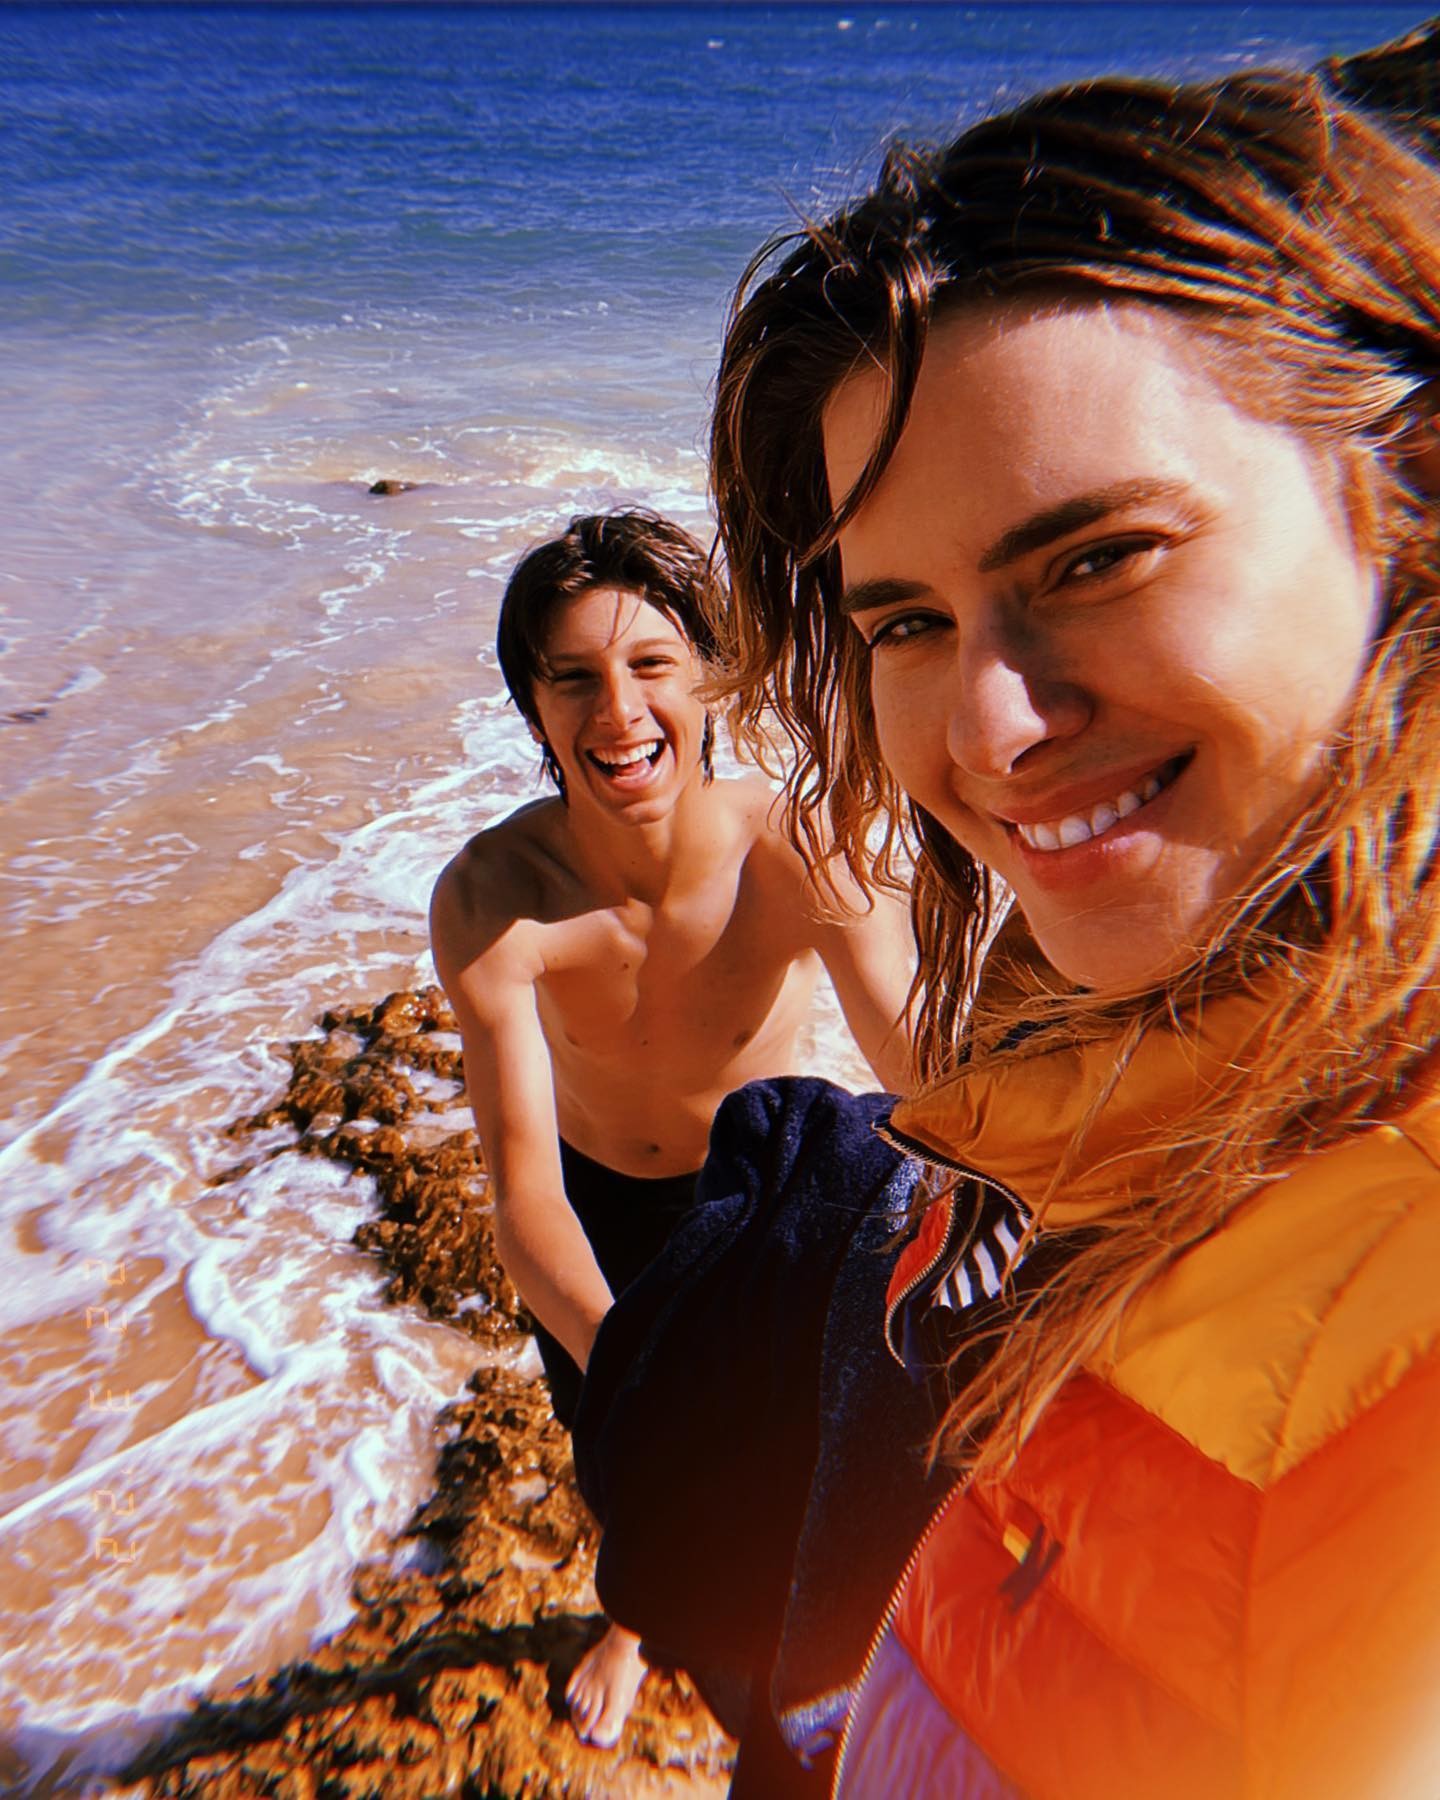 Carolina Dieckmann abre um novo álbum de fotos em Portugal com a família (Foto: Reprodução / Instagram)